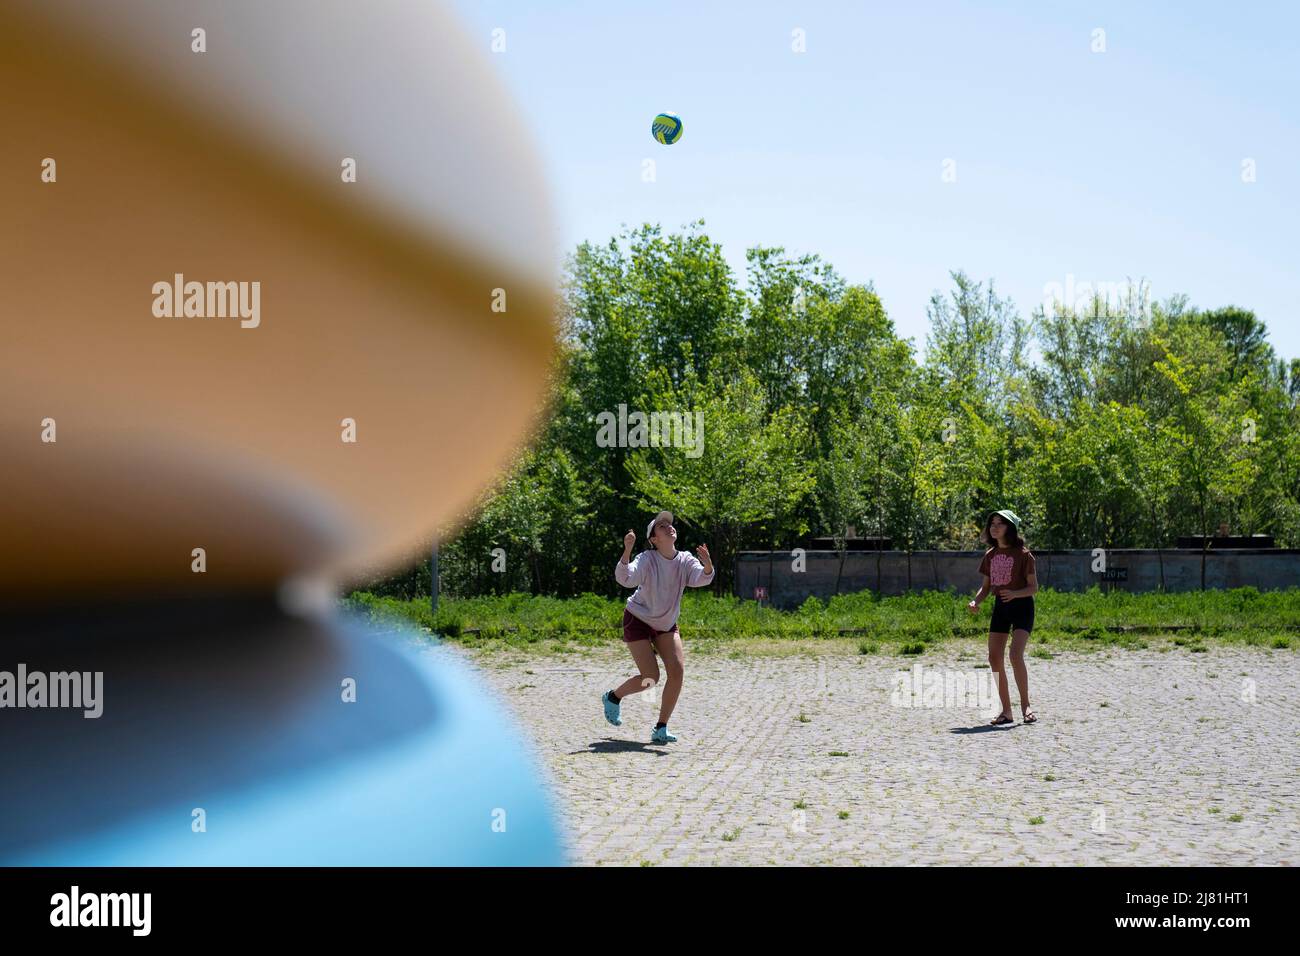 Ukrainische Flüchtlinge spielen in einem Flüchtlingszentrum in Iasi, Rumänien, mit einem Ball. Bilddatum: Mittwoch, 11. Mai 2022. Seit der Eröffnung am 26. März dieses Jahres hat das Zentrum mehr als 900 Frauen und Kindern geholfen, die Unterkünfte, Lebensmittel und Vorräte suchen. Stockfoto